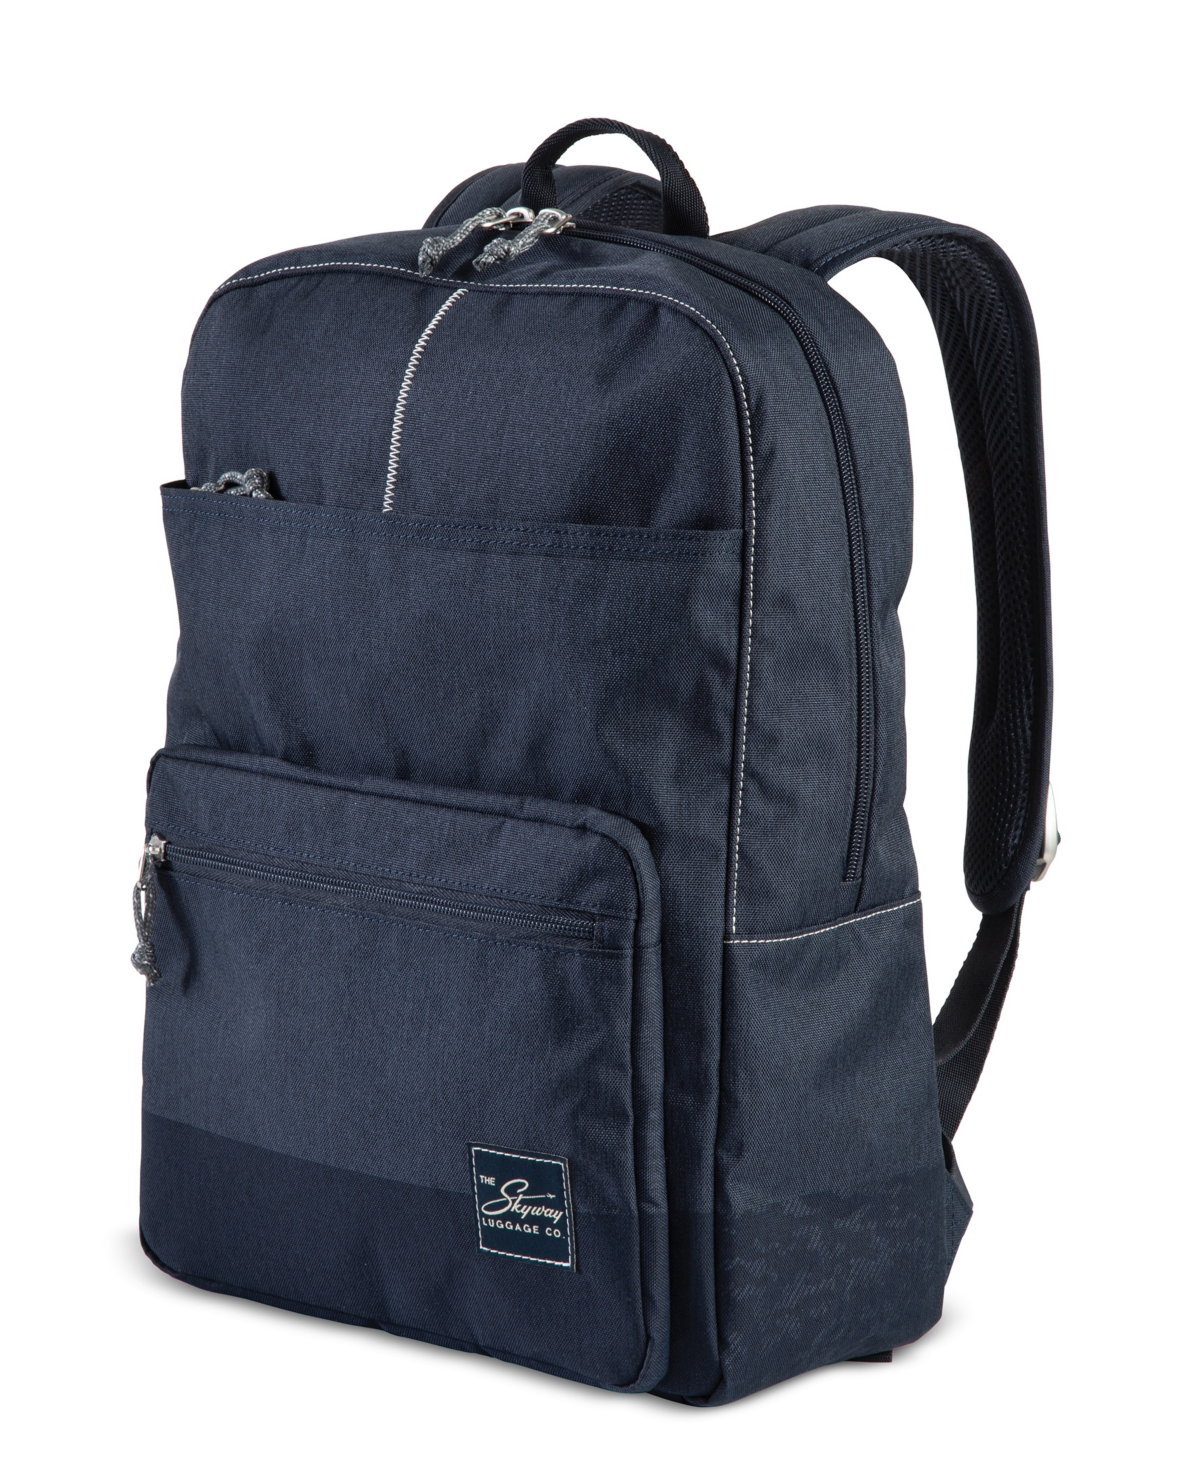 Skyway Rainier Simple Backpack, 16" In Tahoe Blue